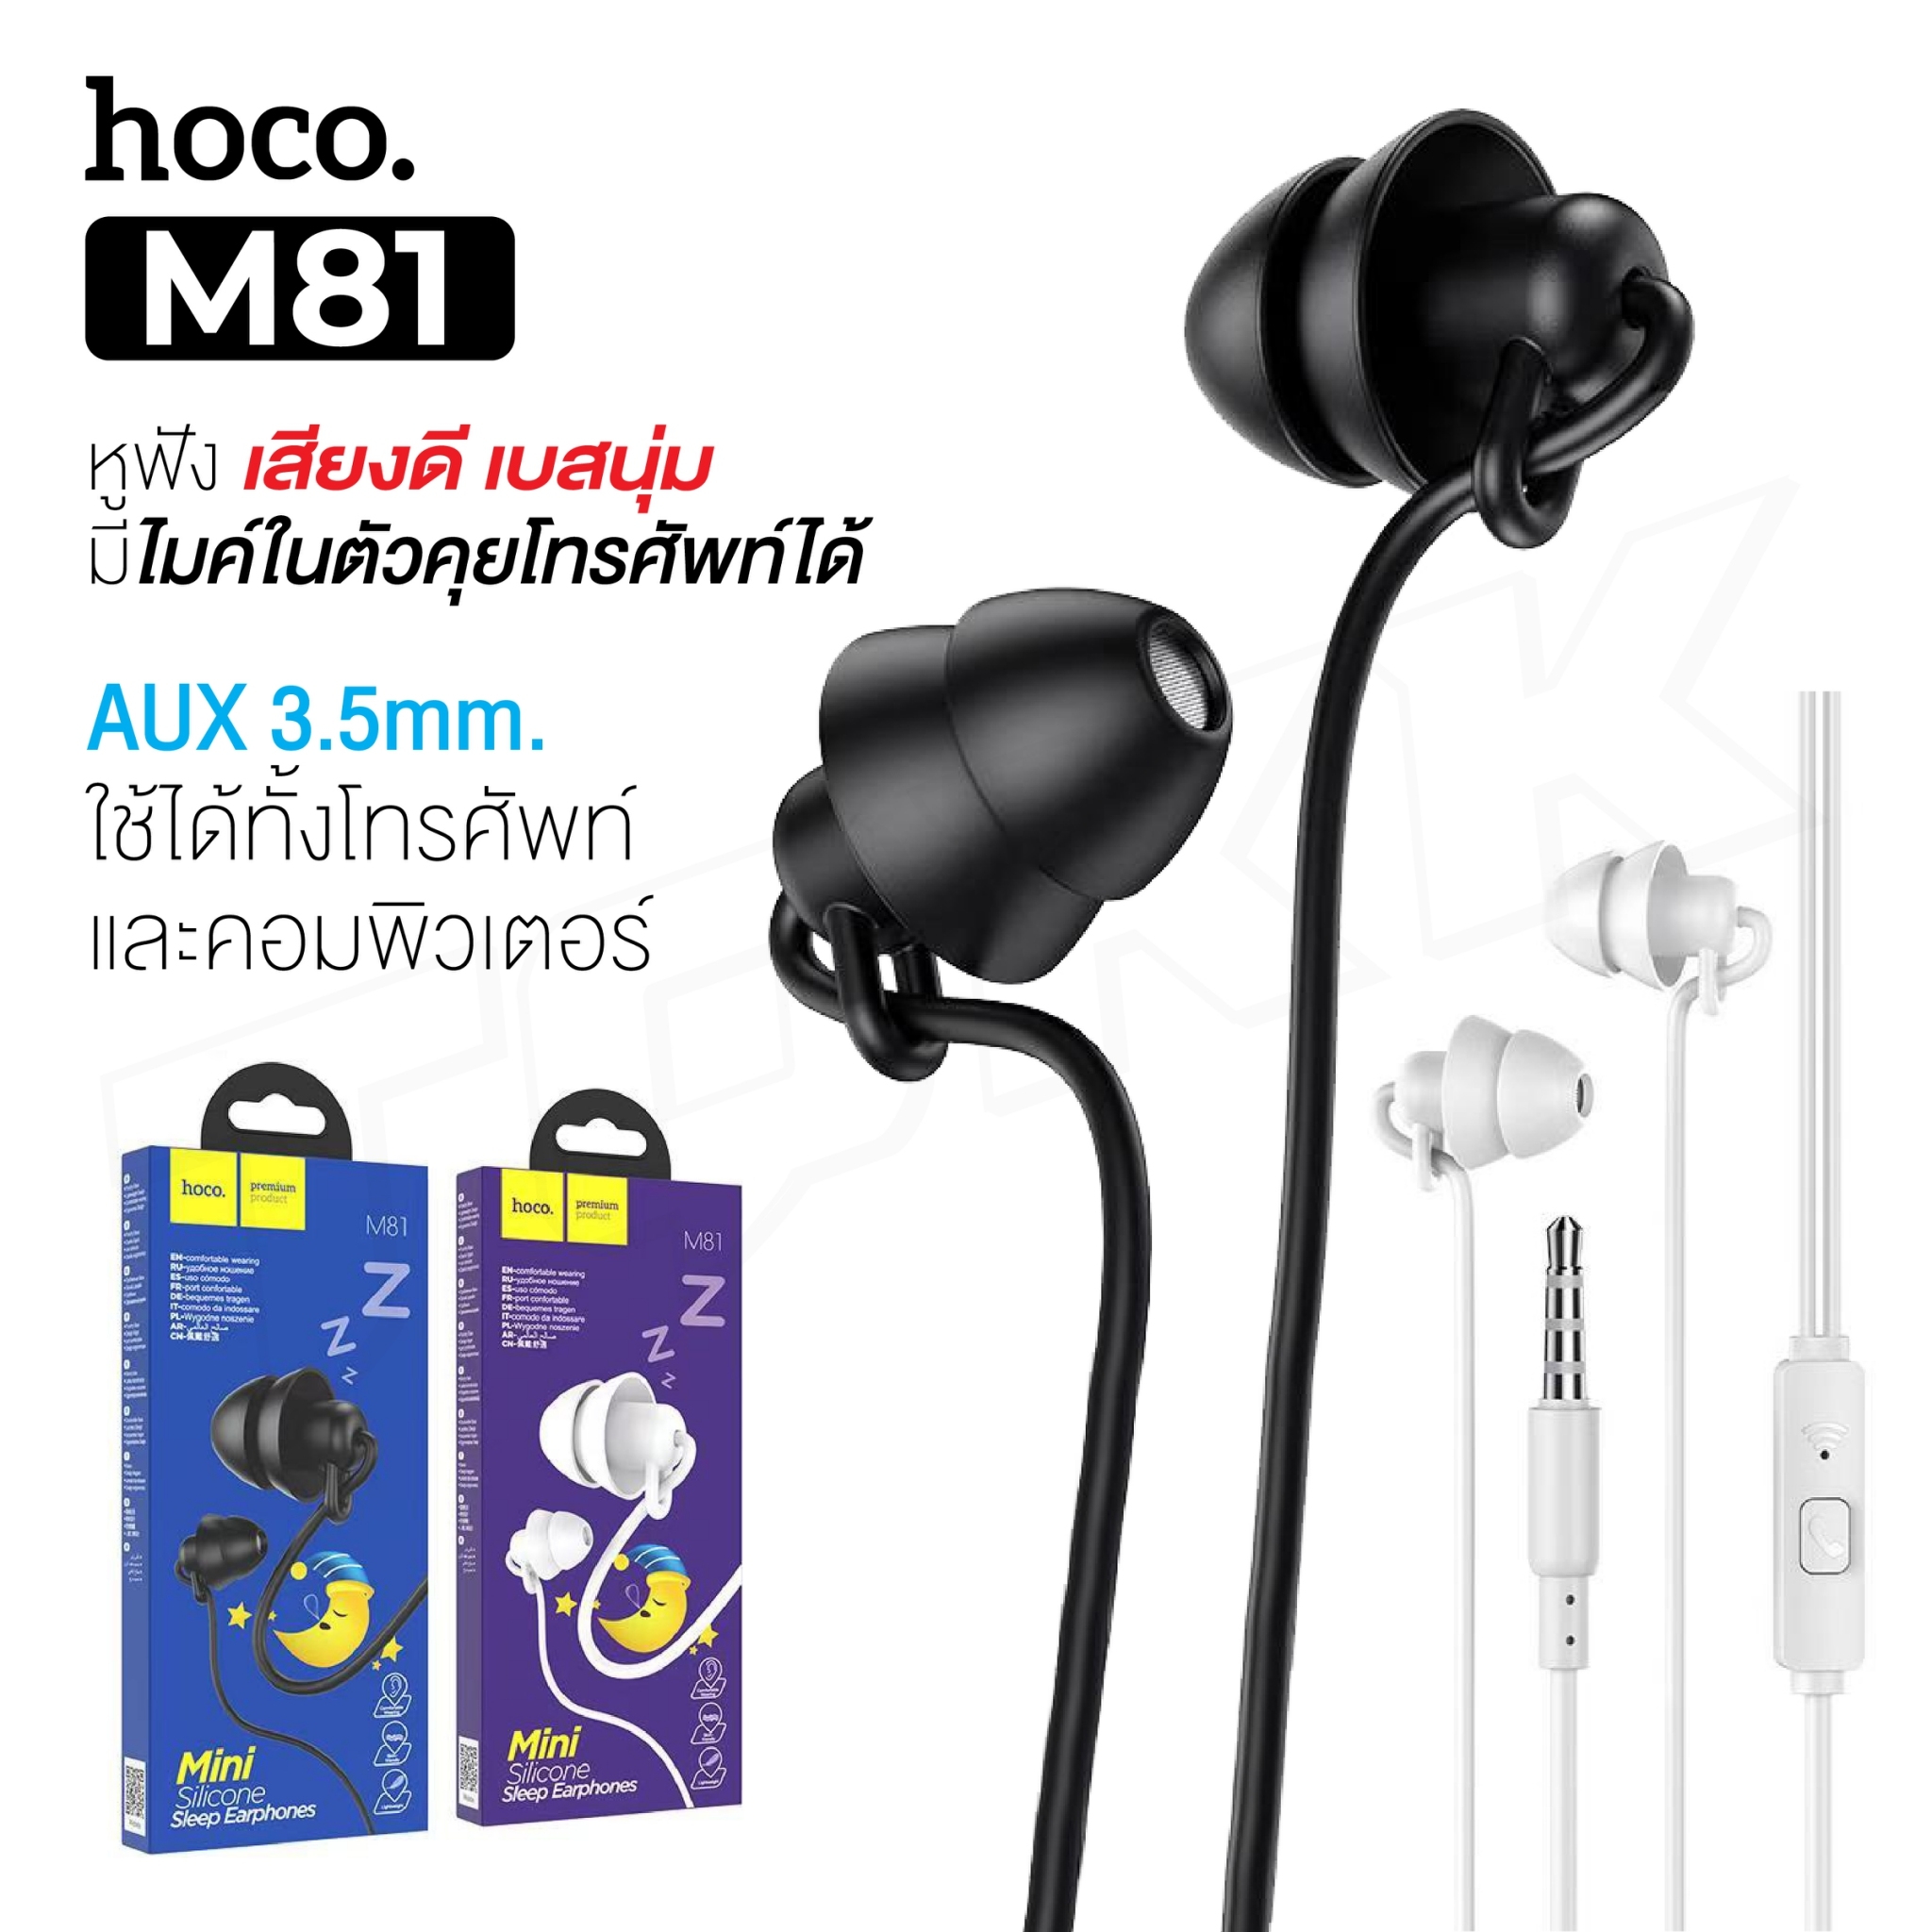 พร้อมส่ง มาใหม่!! Hoco M81 Mini Silicone Sleep Earphones หูฟัง Small Talk ออกแบบจุกยางเพื่อสำหรับใส่นอน ของแท้100%